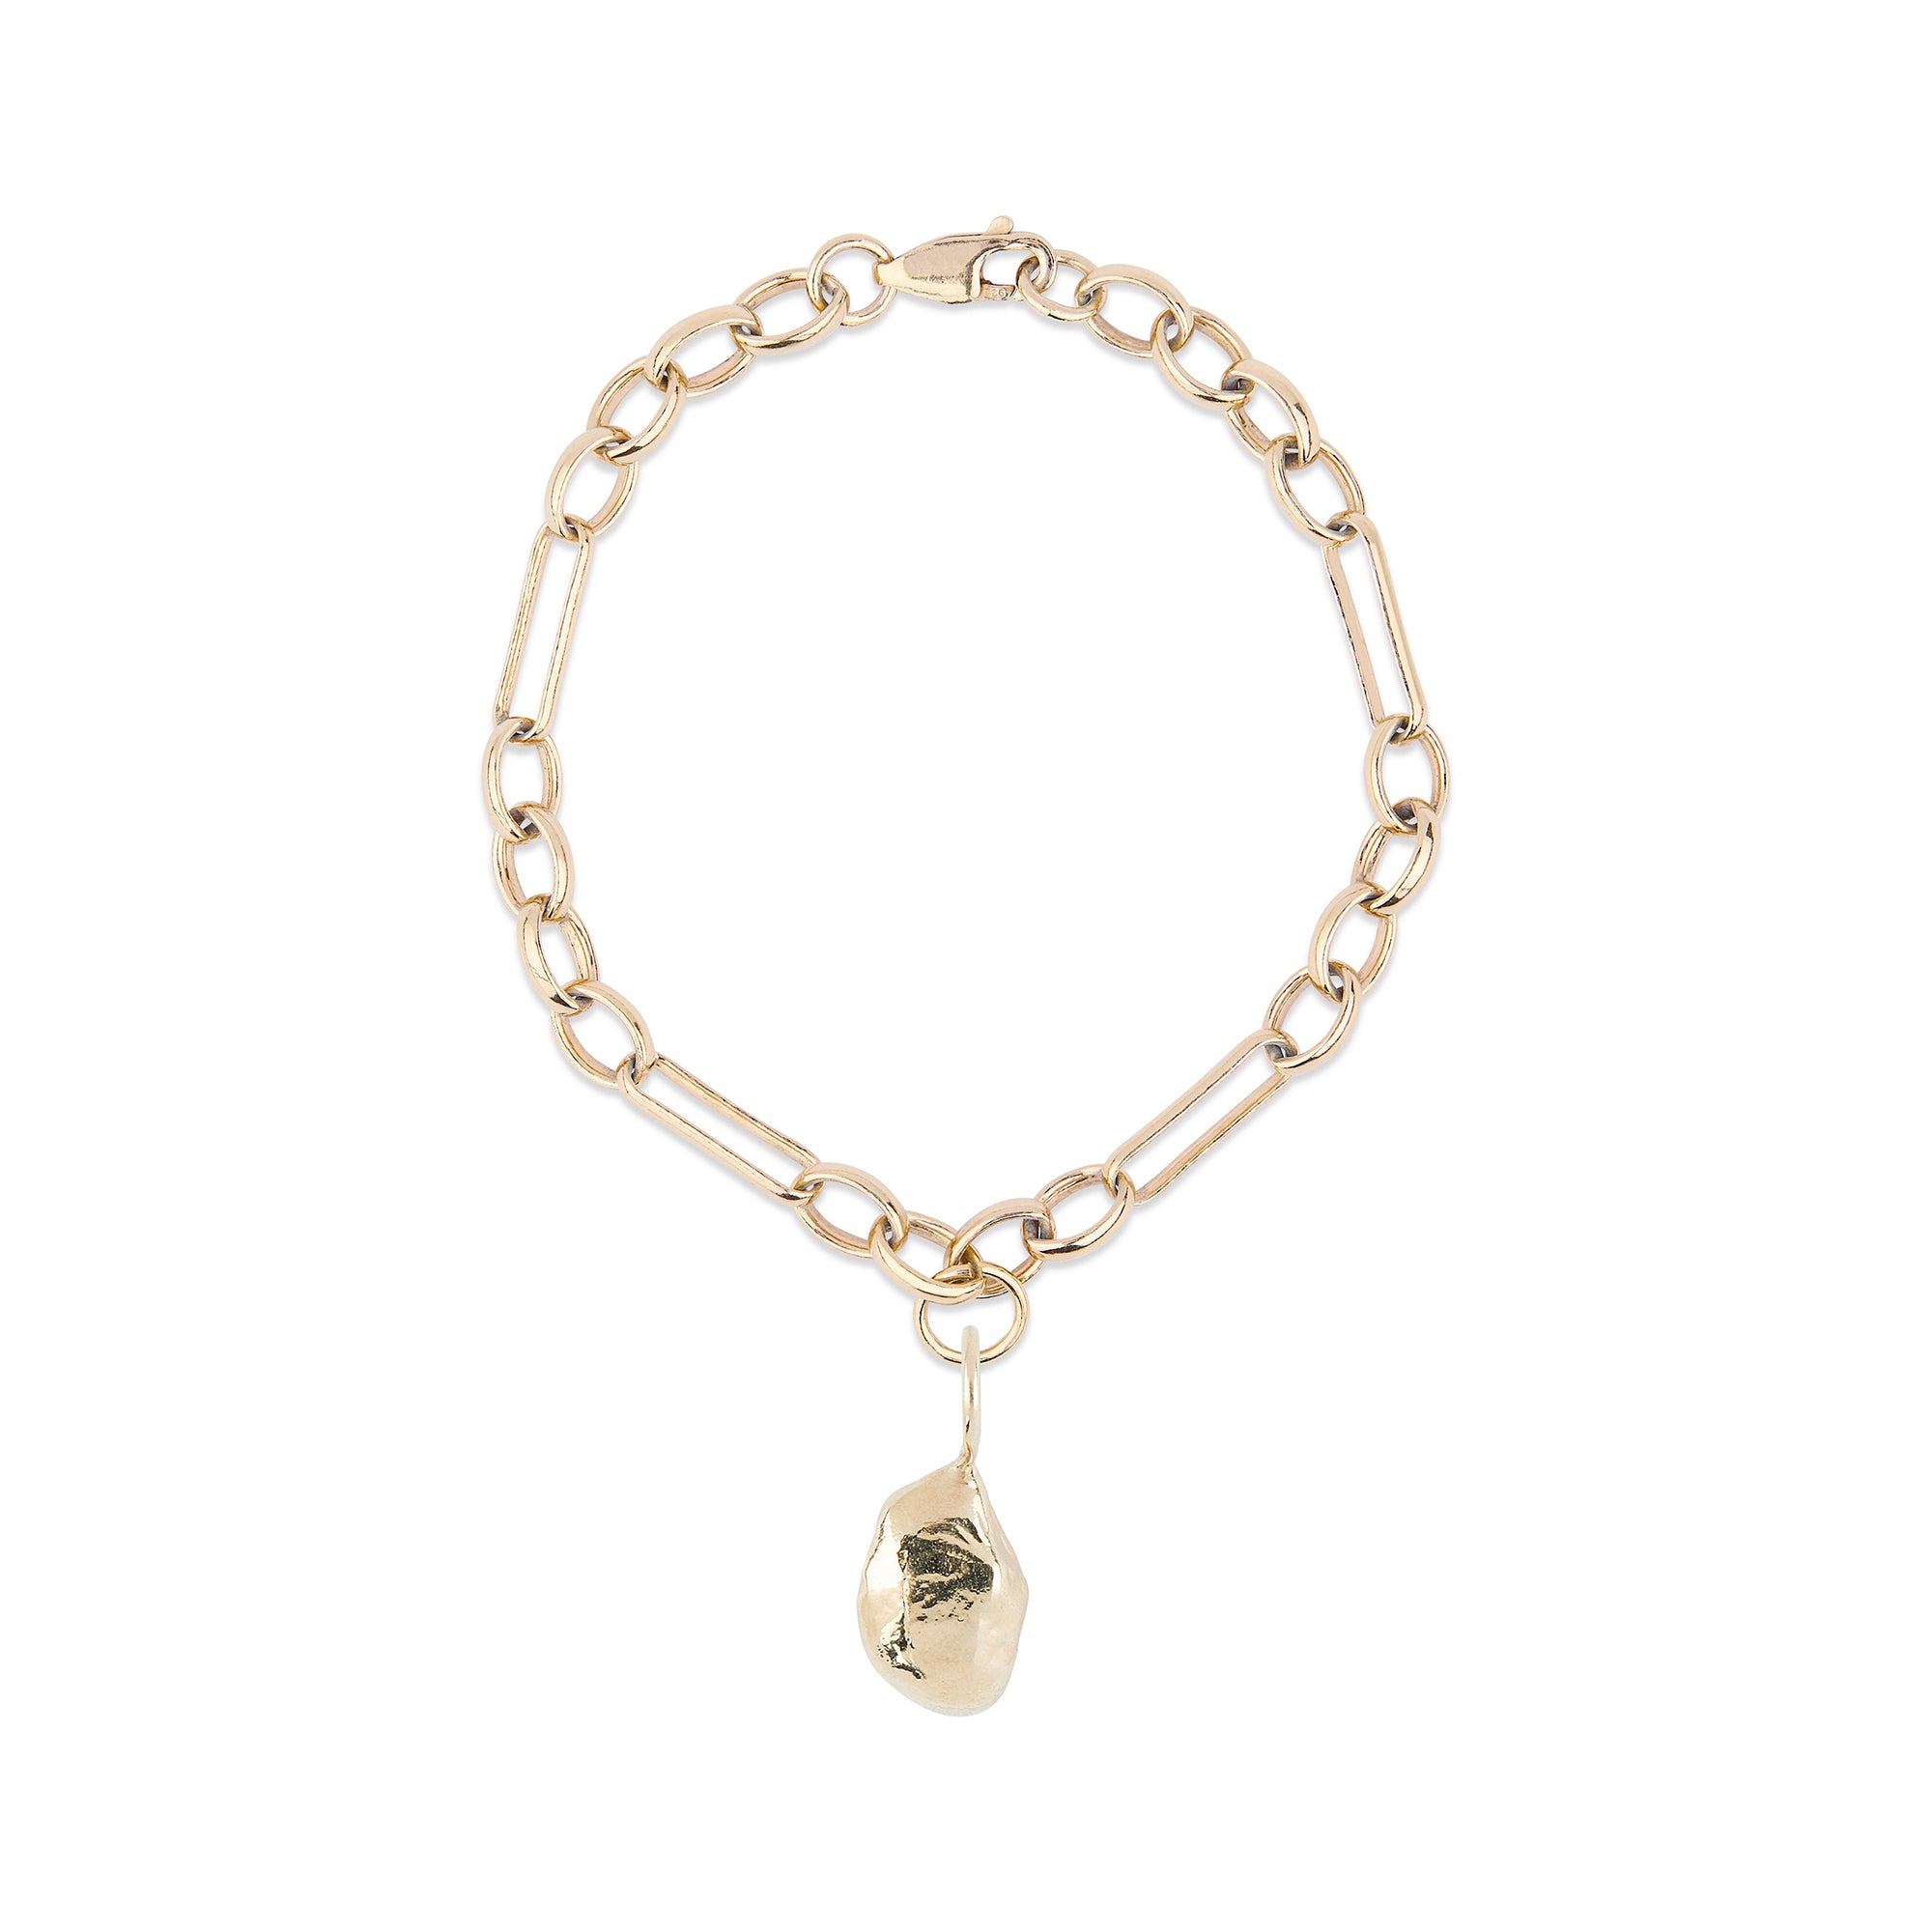 Molten Nugget bracelet charm - Large Link Chain